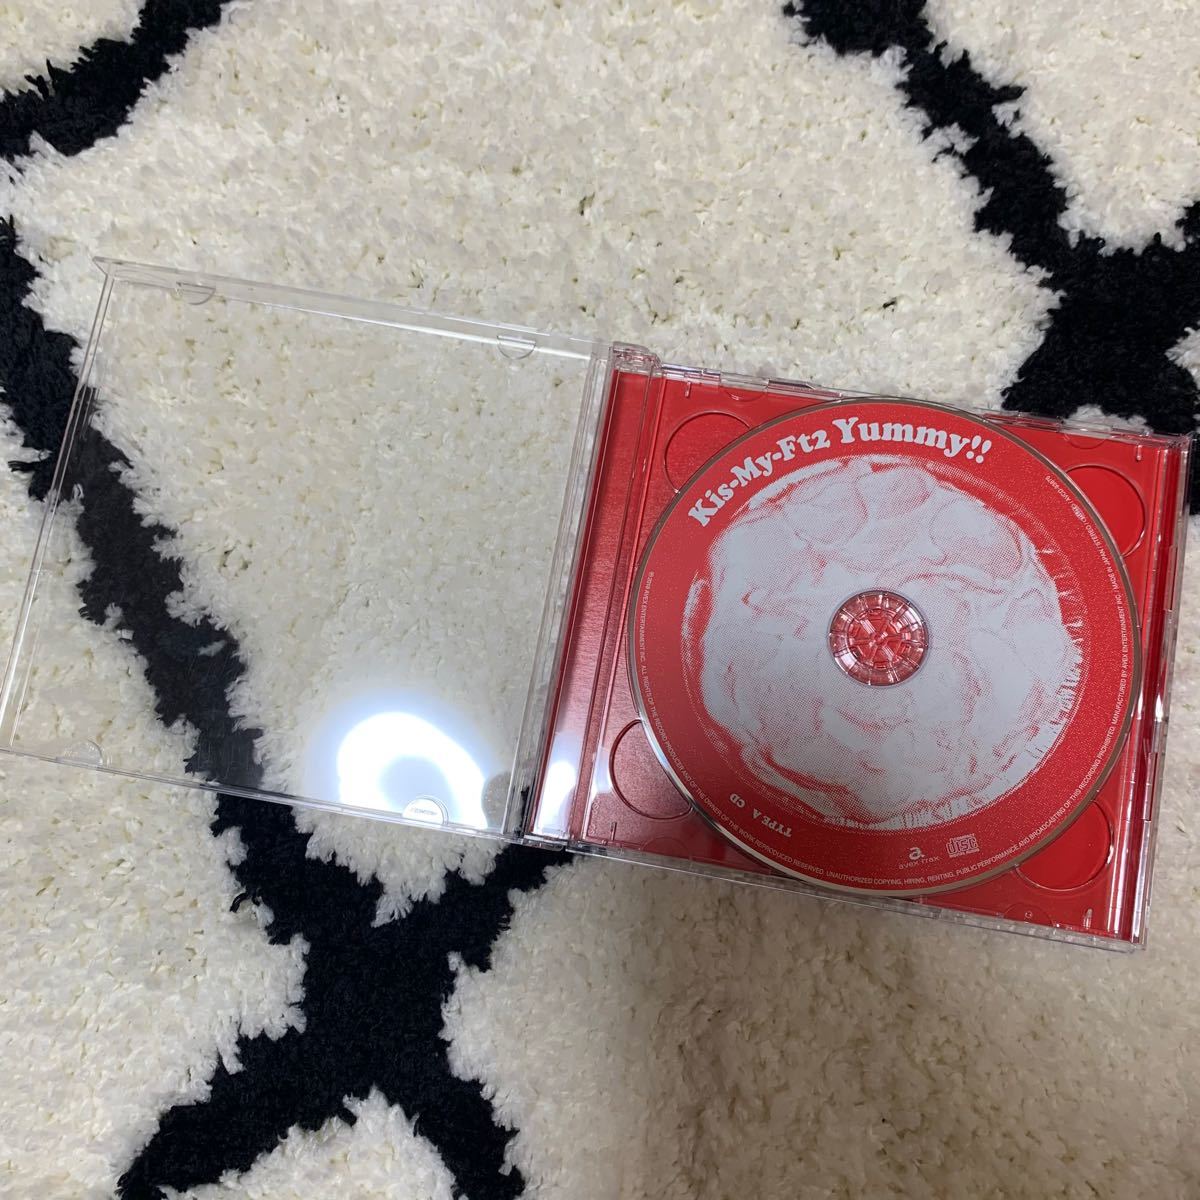 初回盤A Kis-My-Ft2 CD+DVD/Yummy!! 18/4/25発売 オリコン加盟店